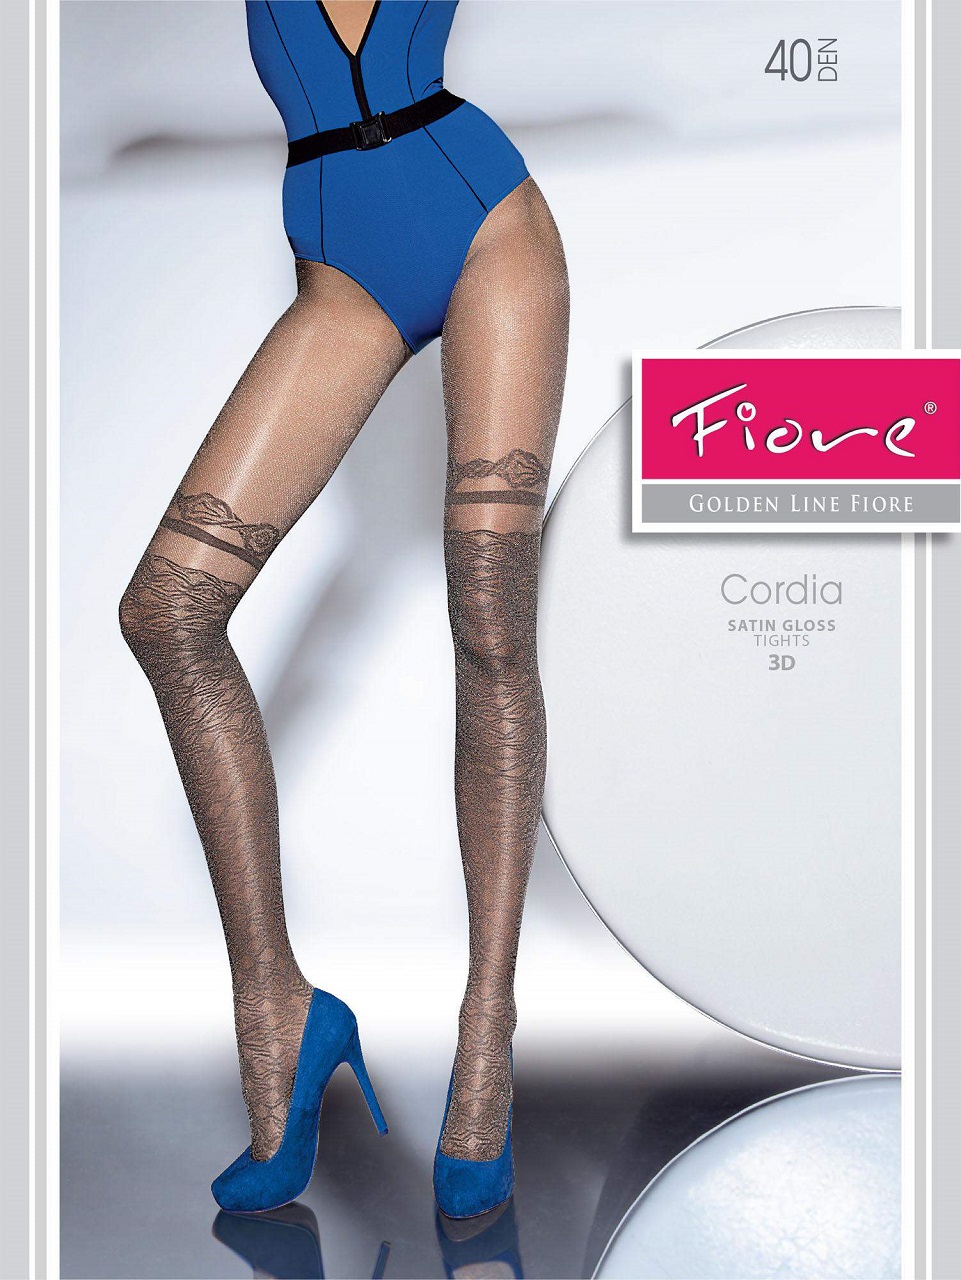 Cordia FiORE hold ups imitation tights satin gloss